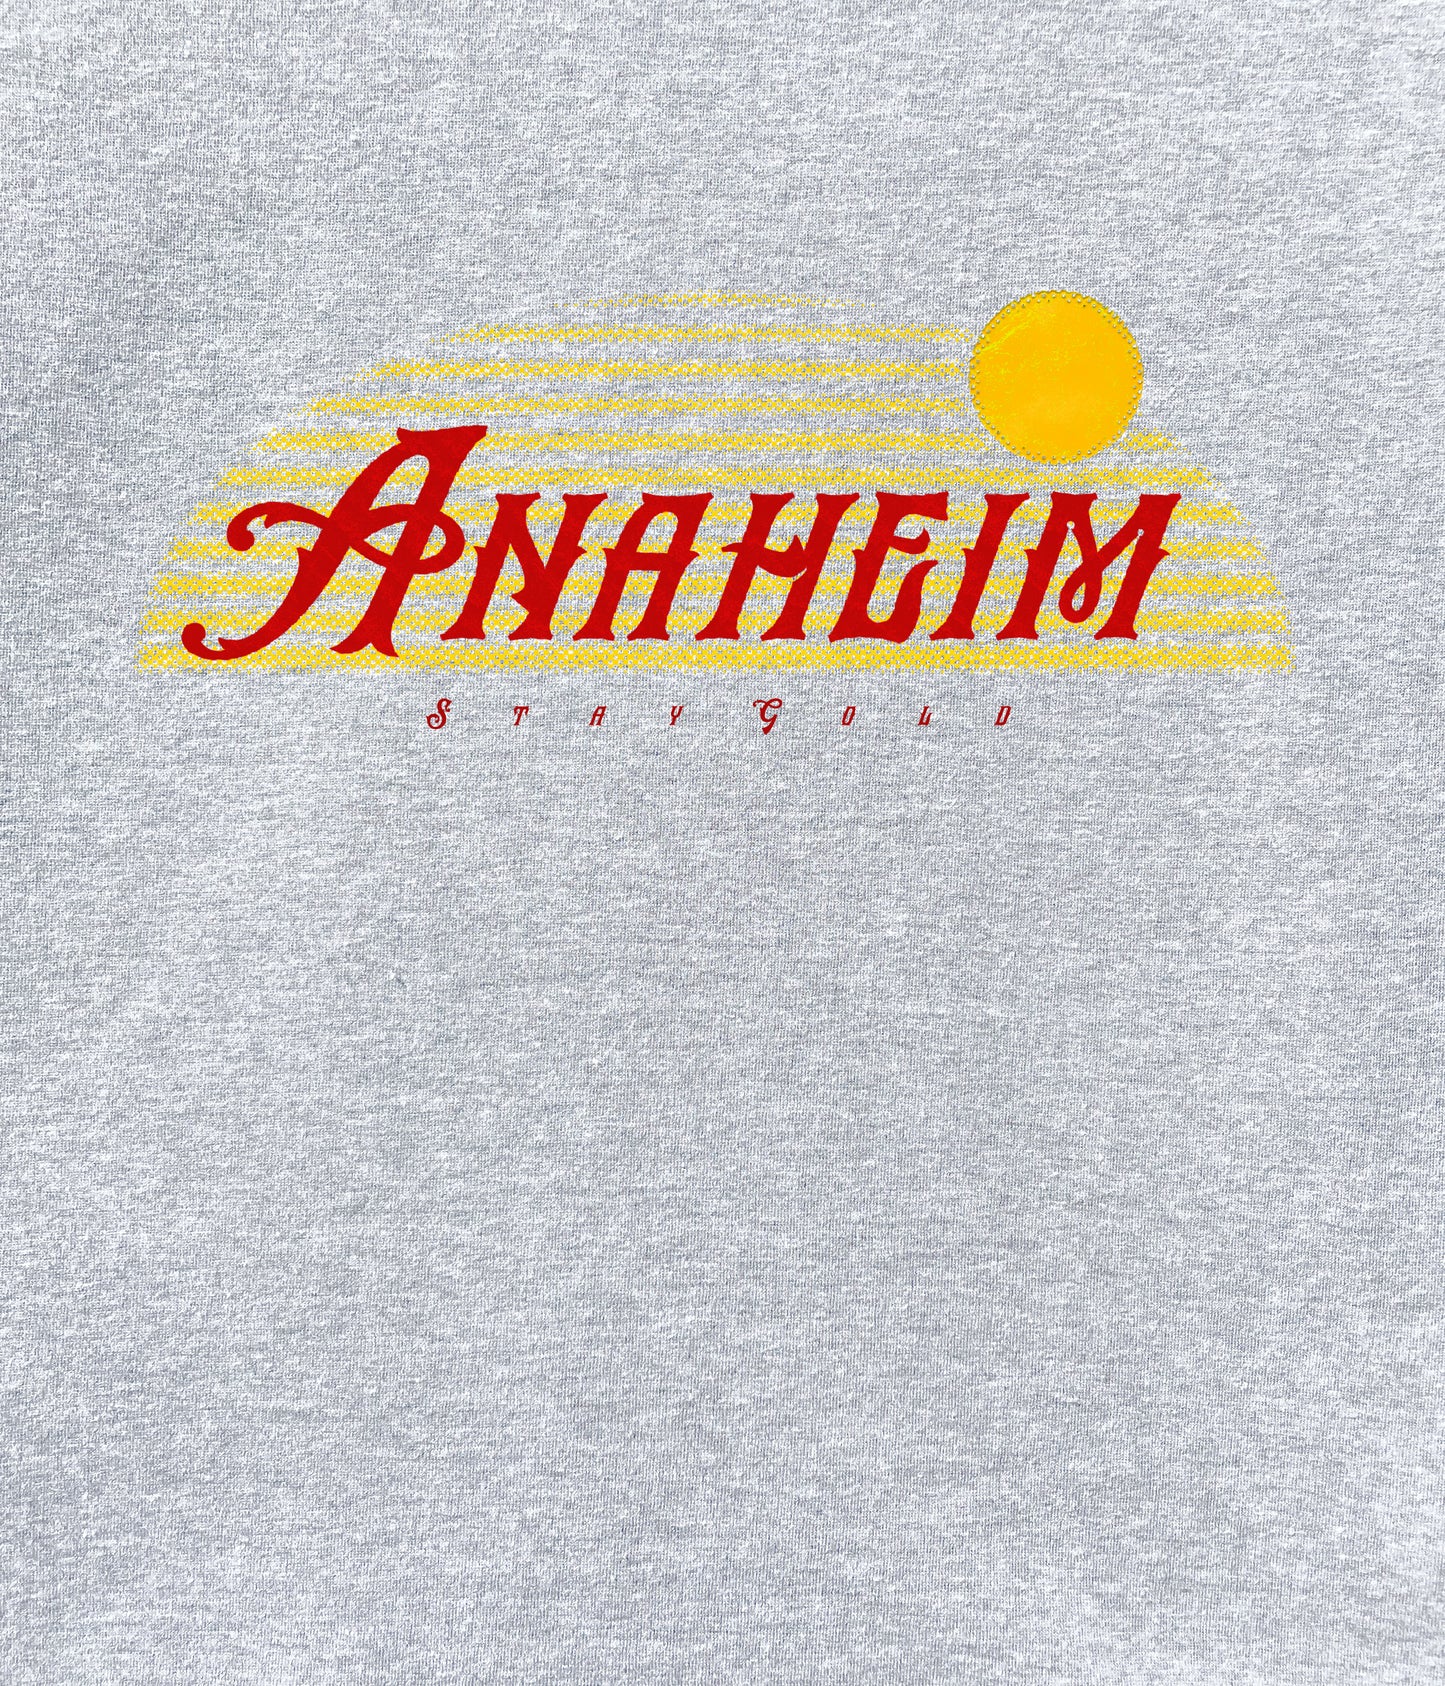 Anaheim Stay Gold